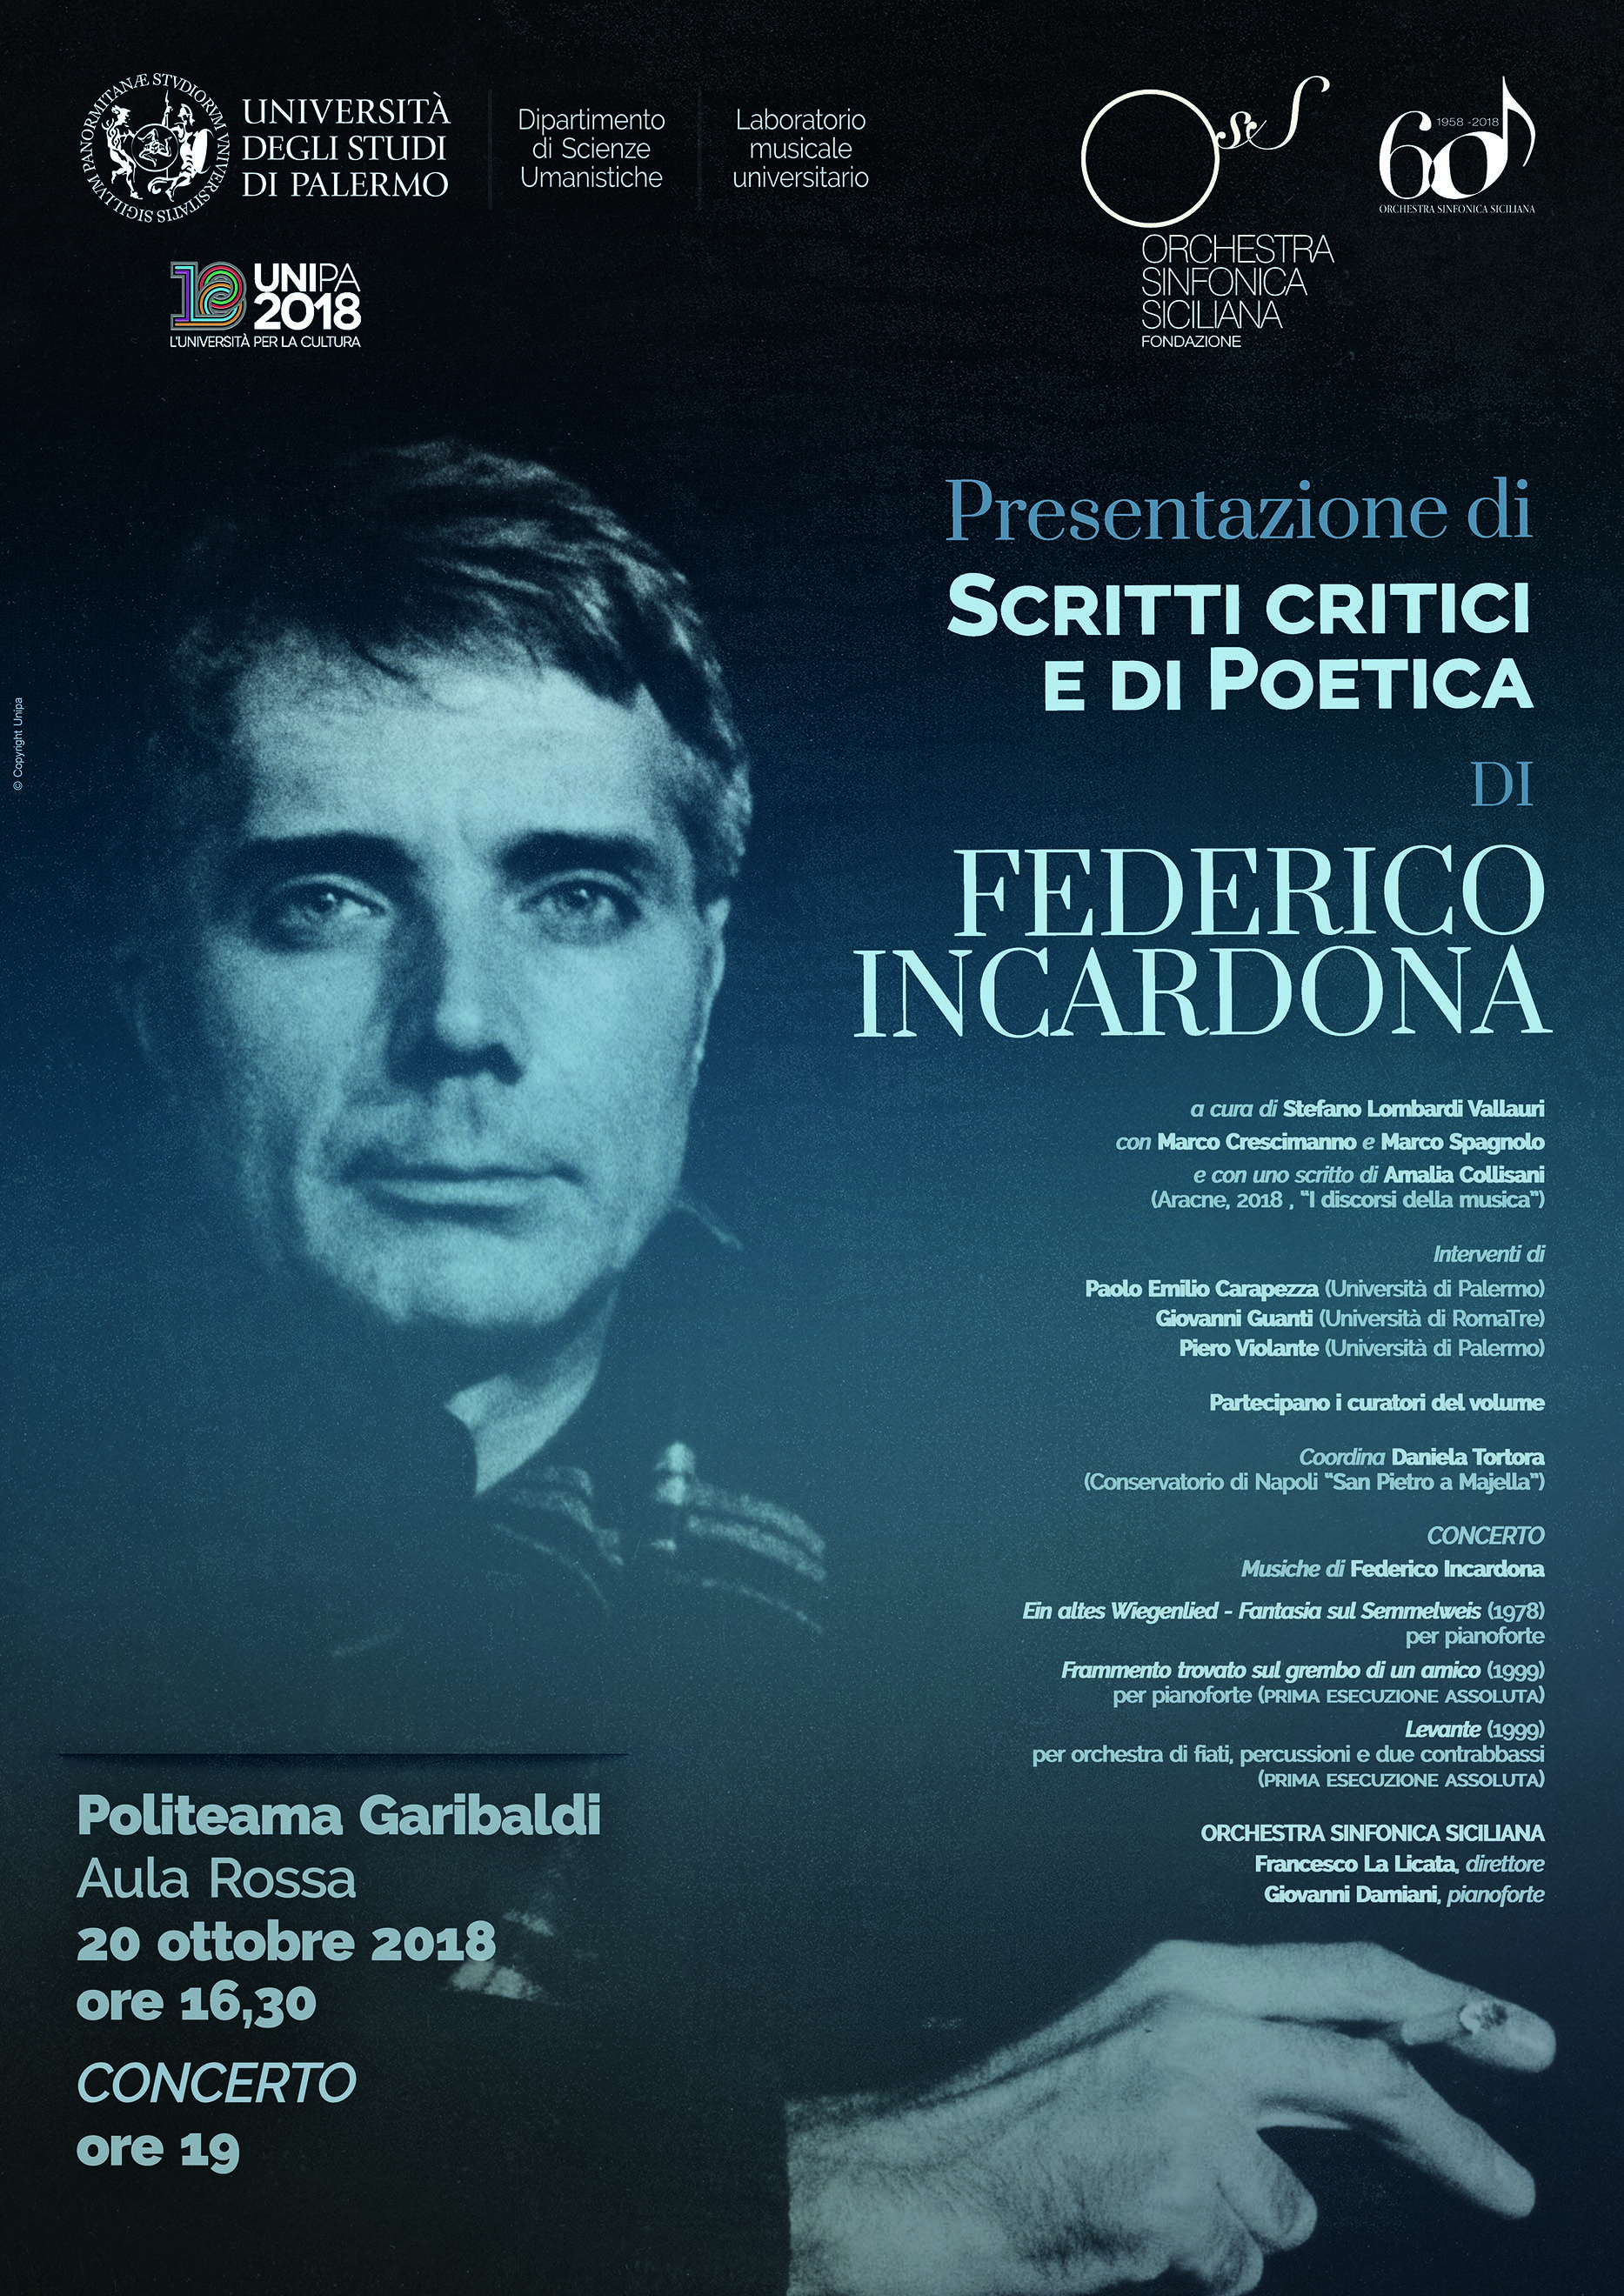 FEDERICO INCARDONA_Scritti critici e di Poetica (web)